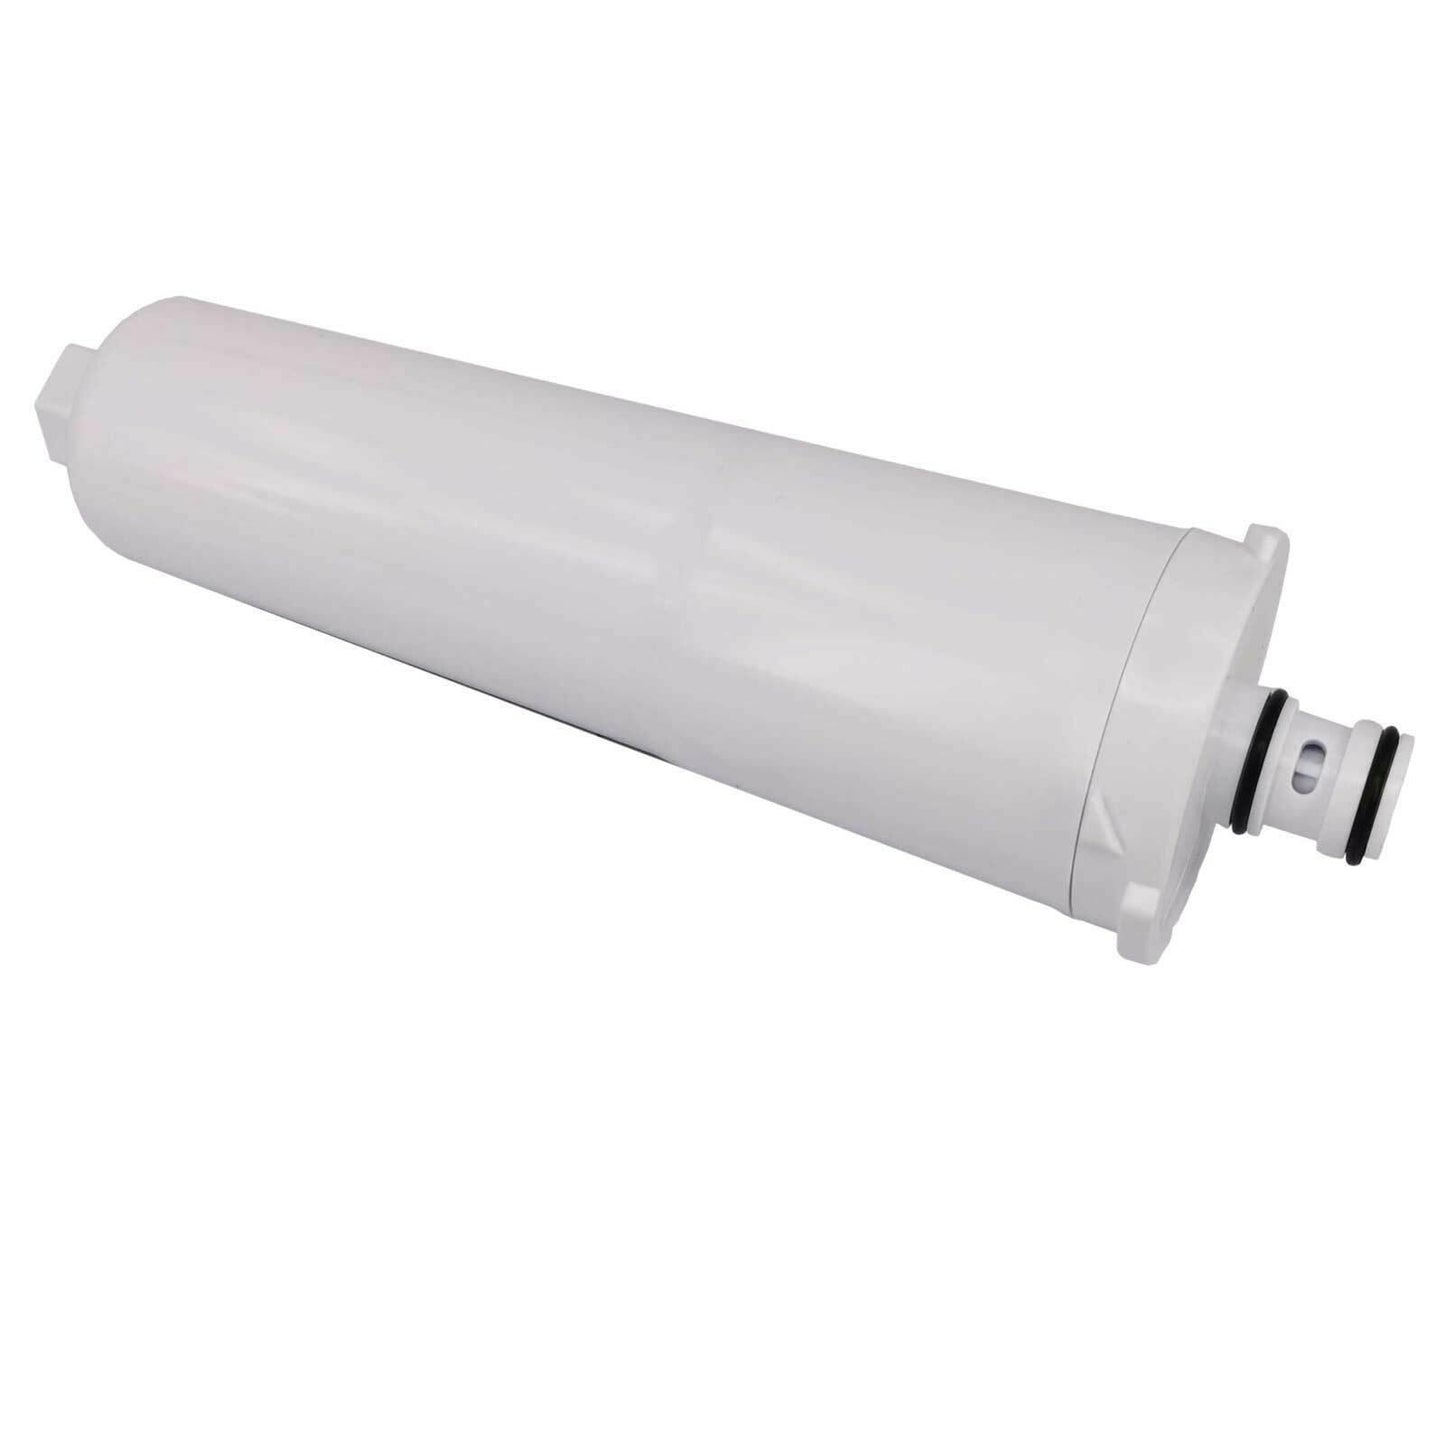 Internal Fridge Water Filter CS-52 for Bosch 640565 AP3961137 1257074 Sparesbarn